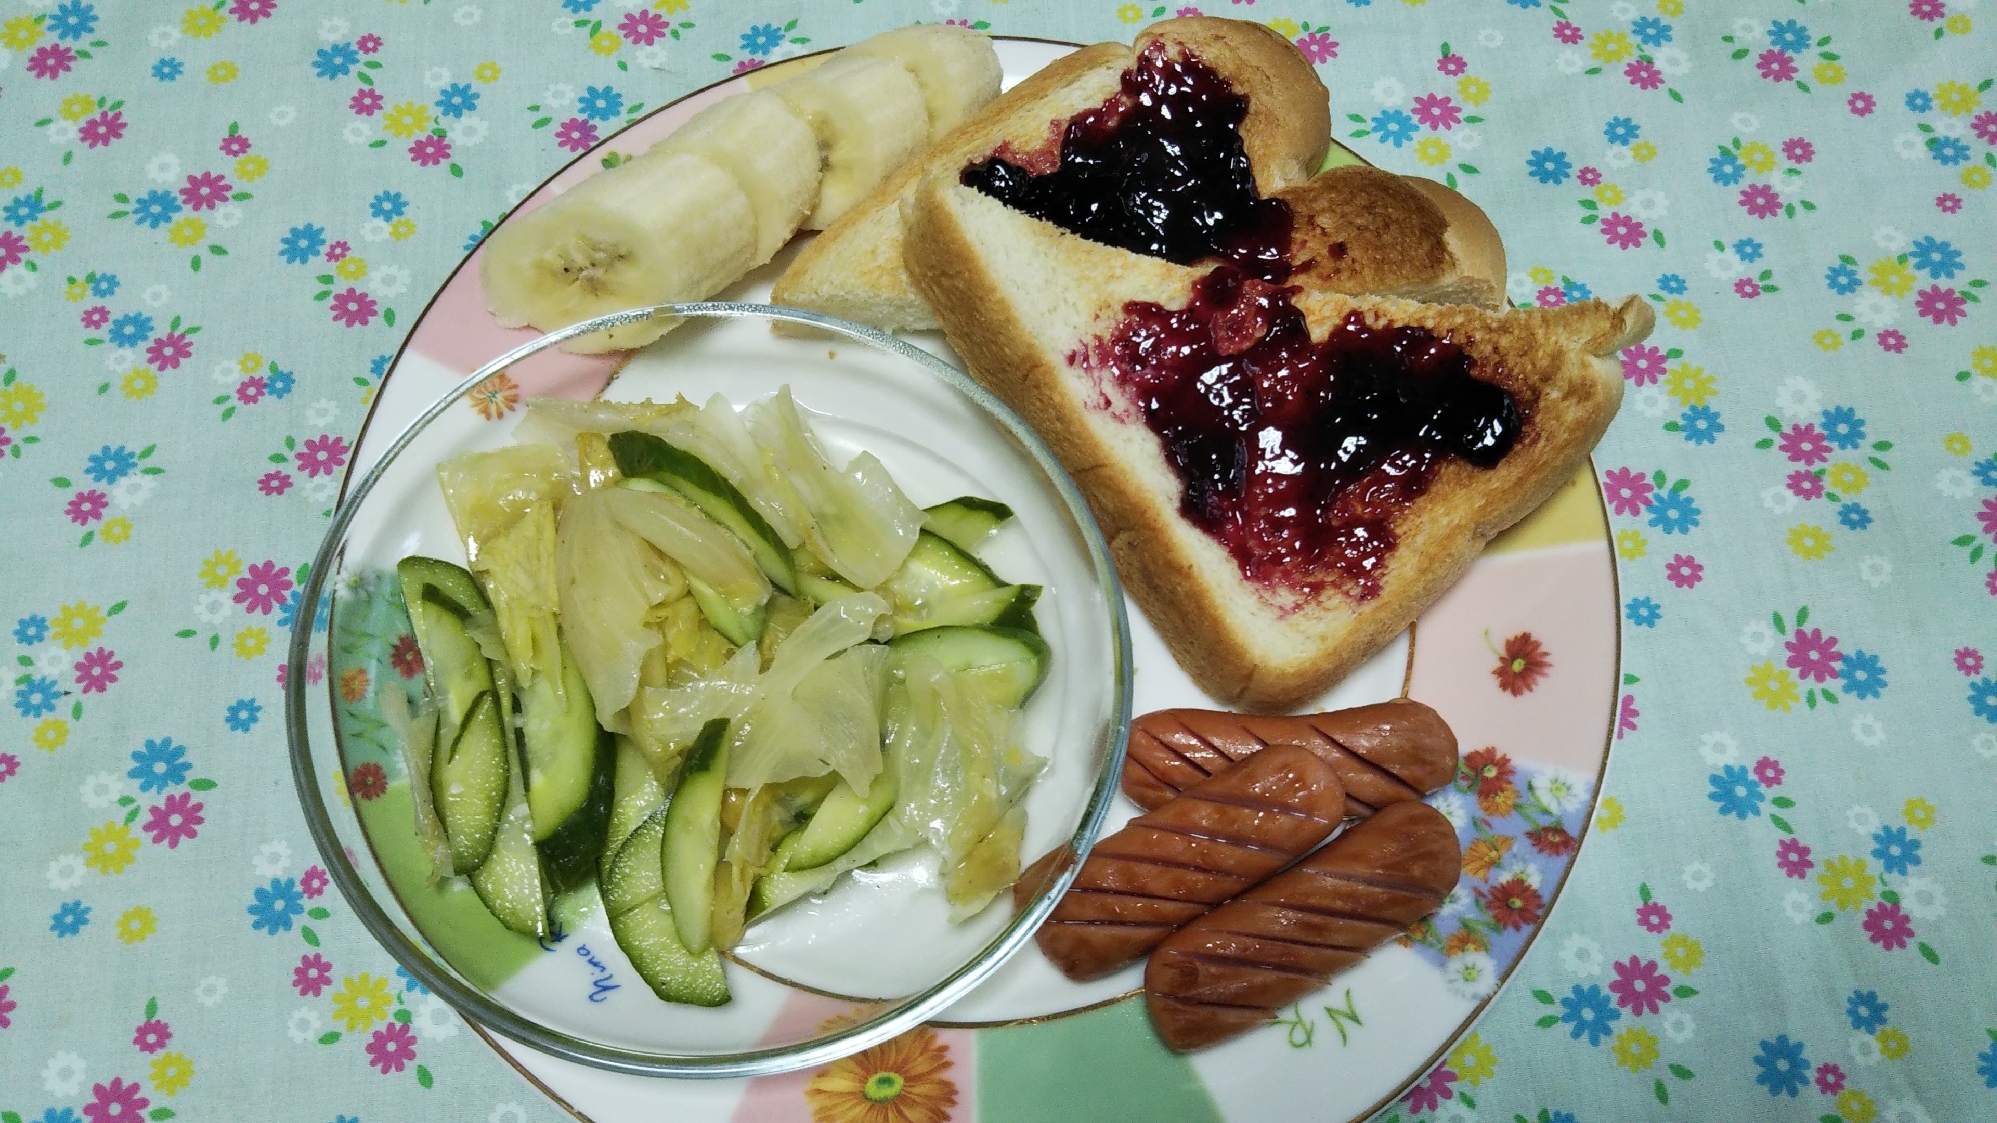 きゅうりレタスのマリネとウインナーとトーストの朝食